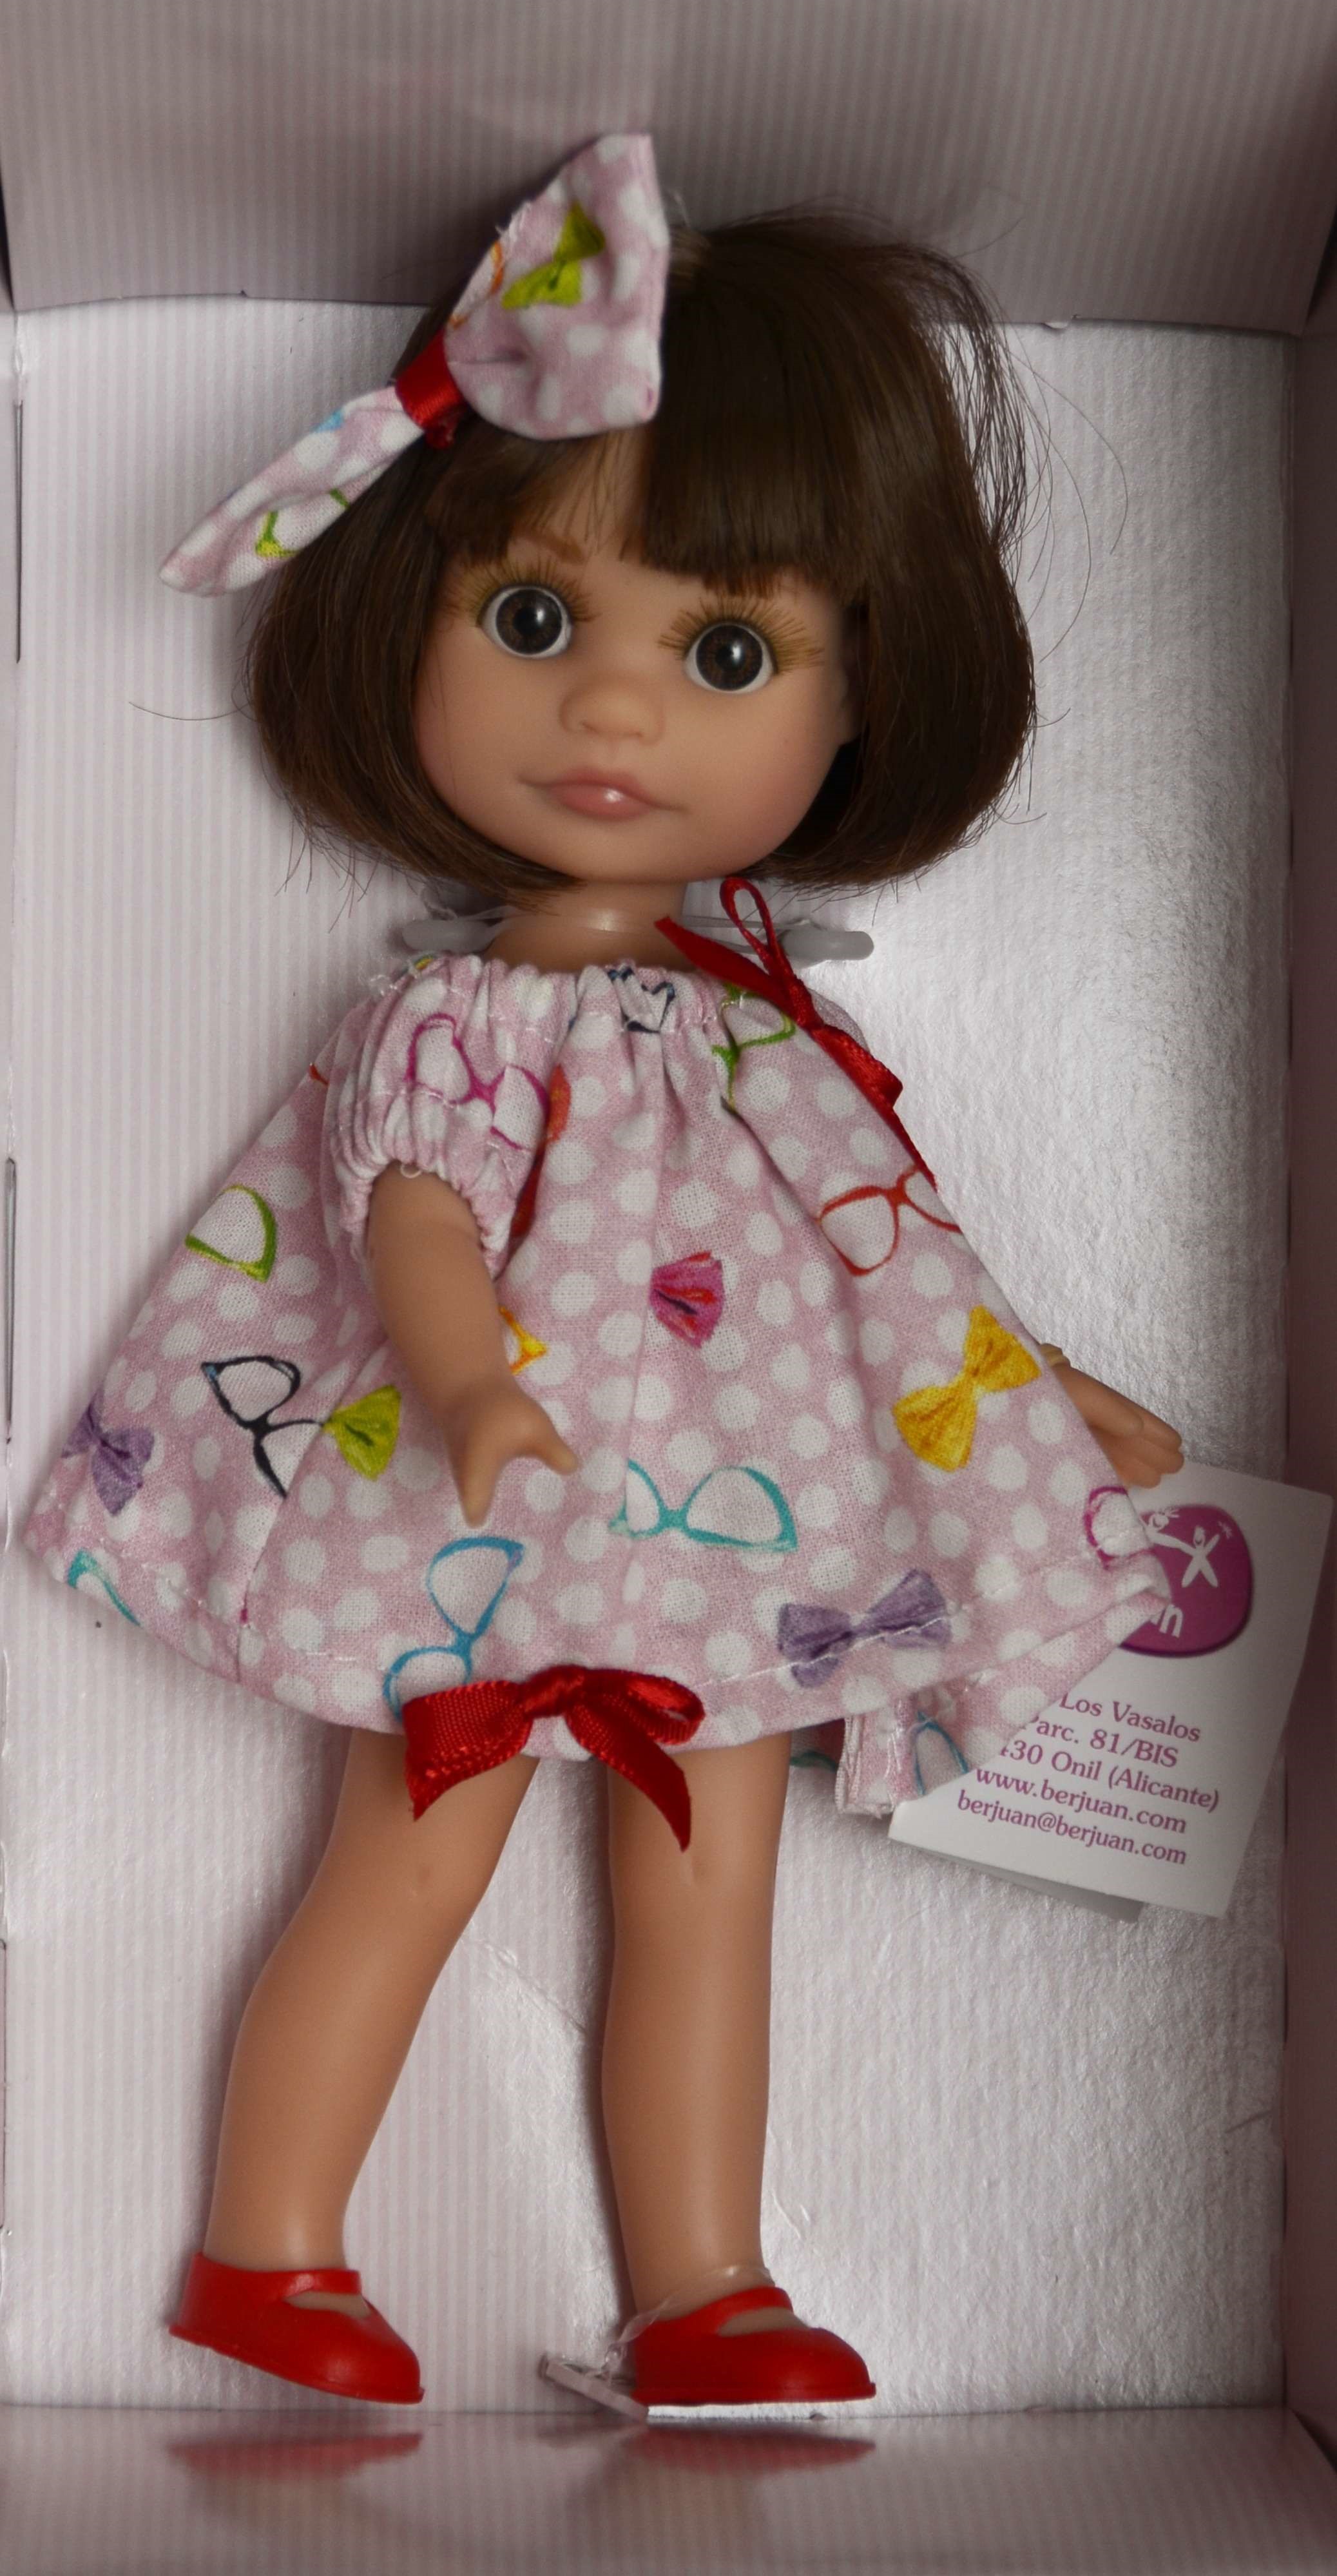 Realistická panenka Luci v letním od firmy Berjuan